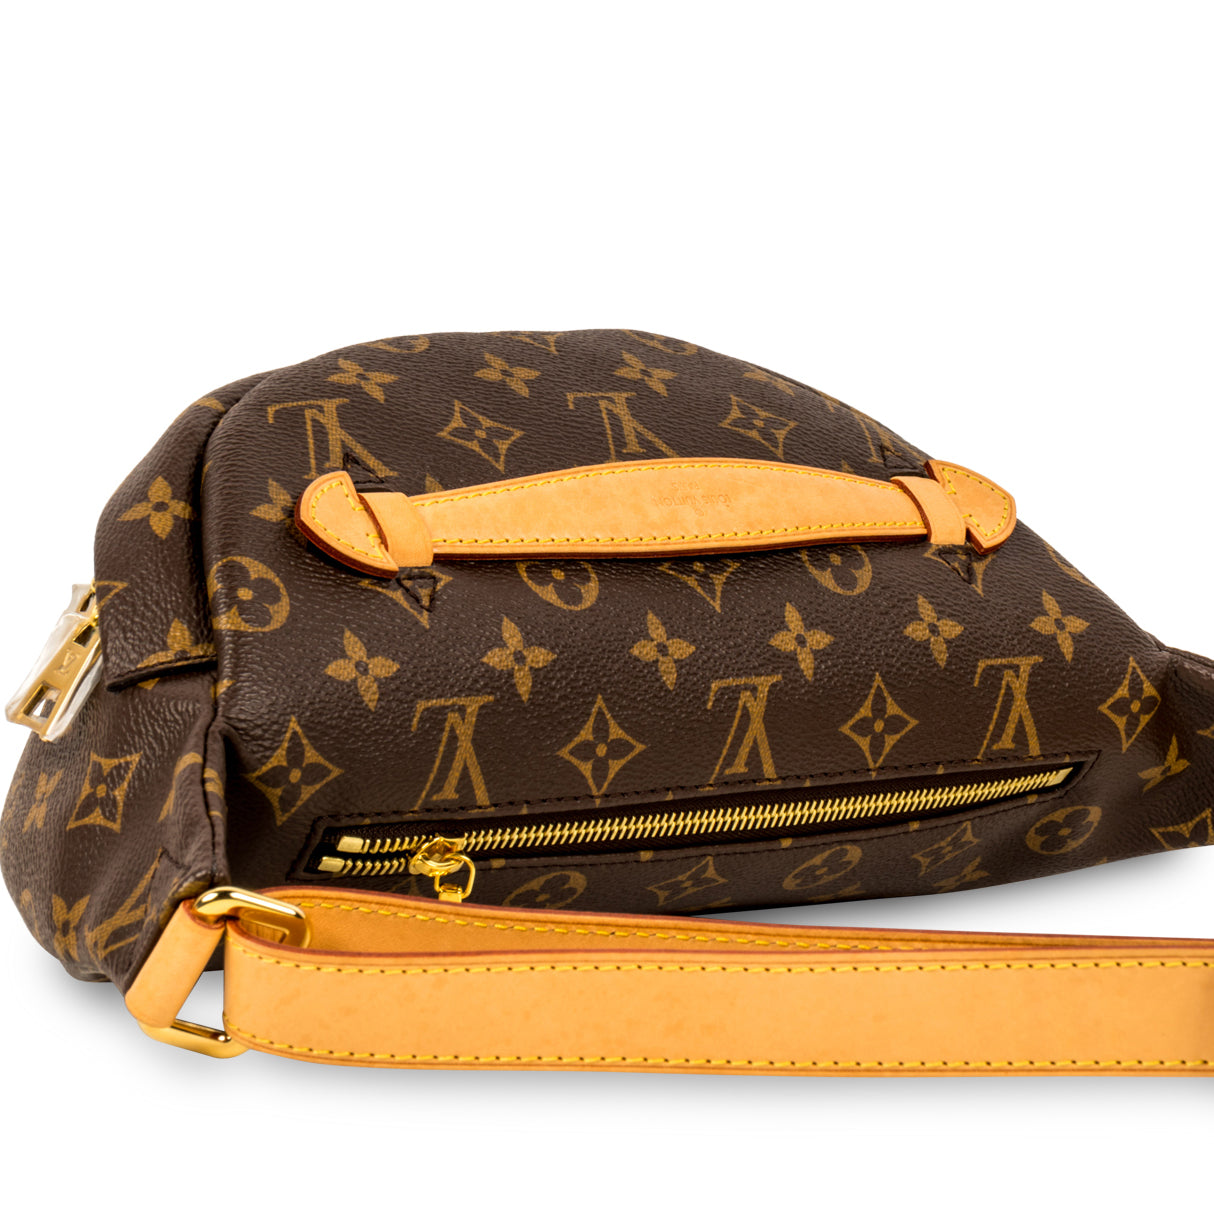 Louis Vuitton Bum Bag -  UK